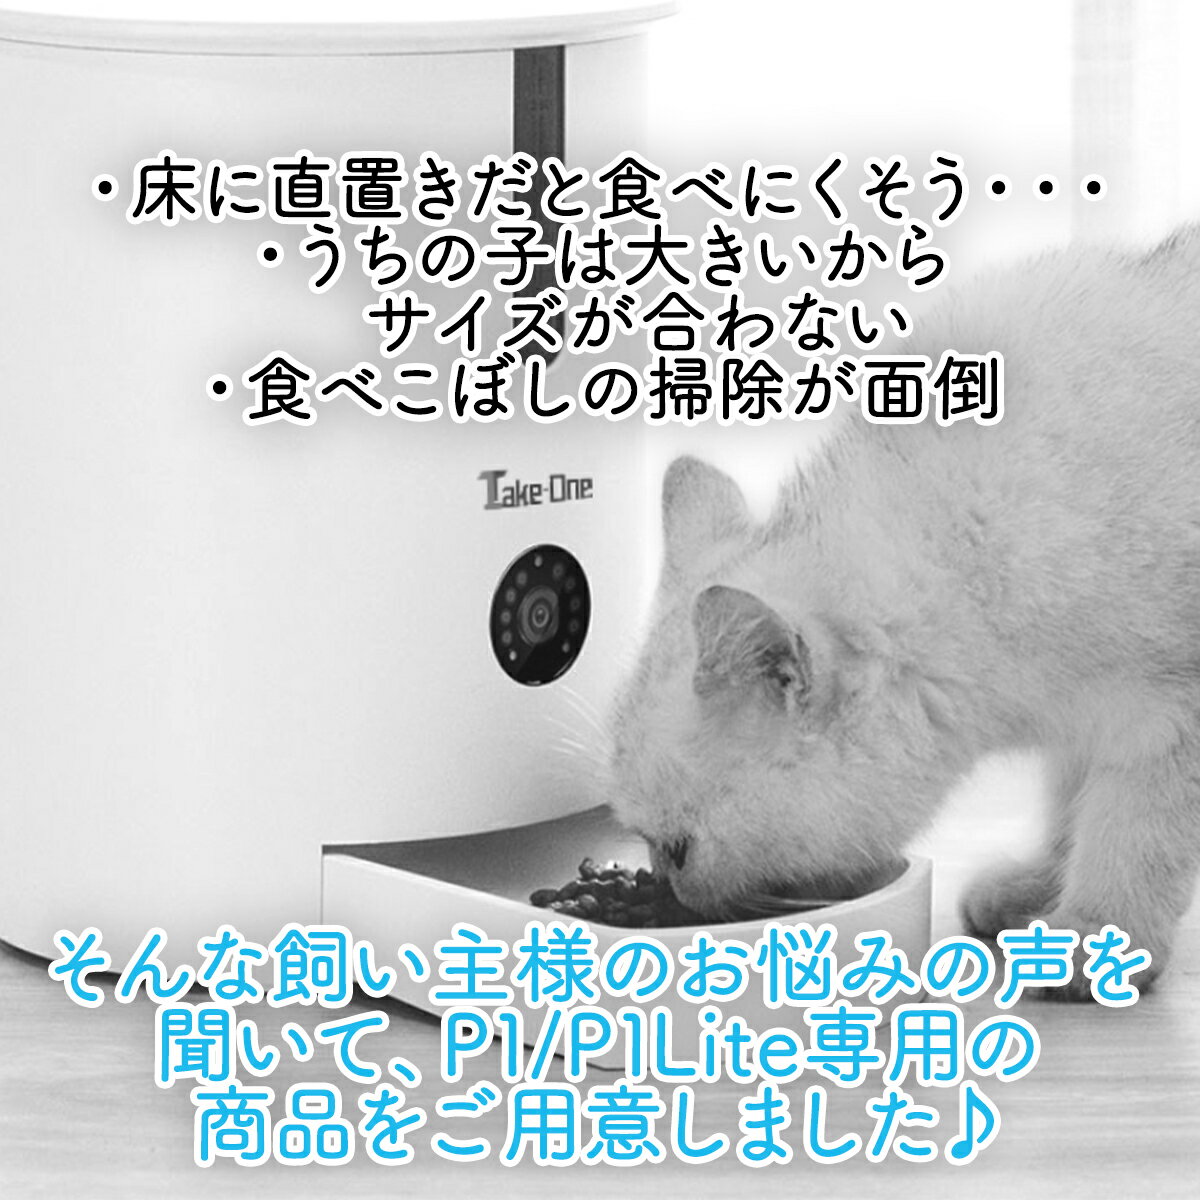 純正箱 Take-One 給餌器 ペット 自動給餌器 P1 犬猫用 ペットフード 餌やり ペット用品